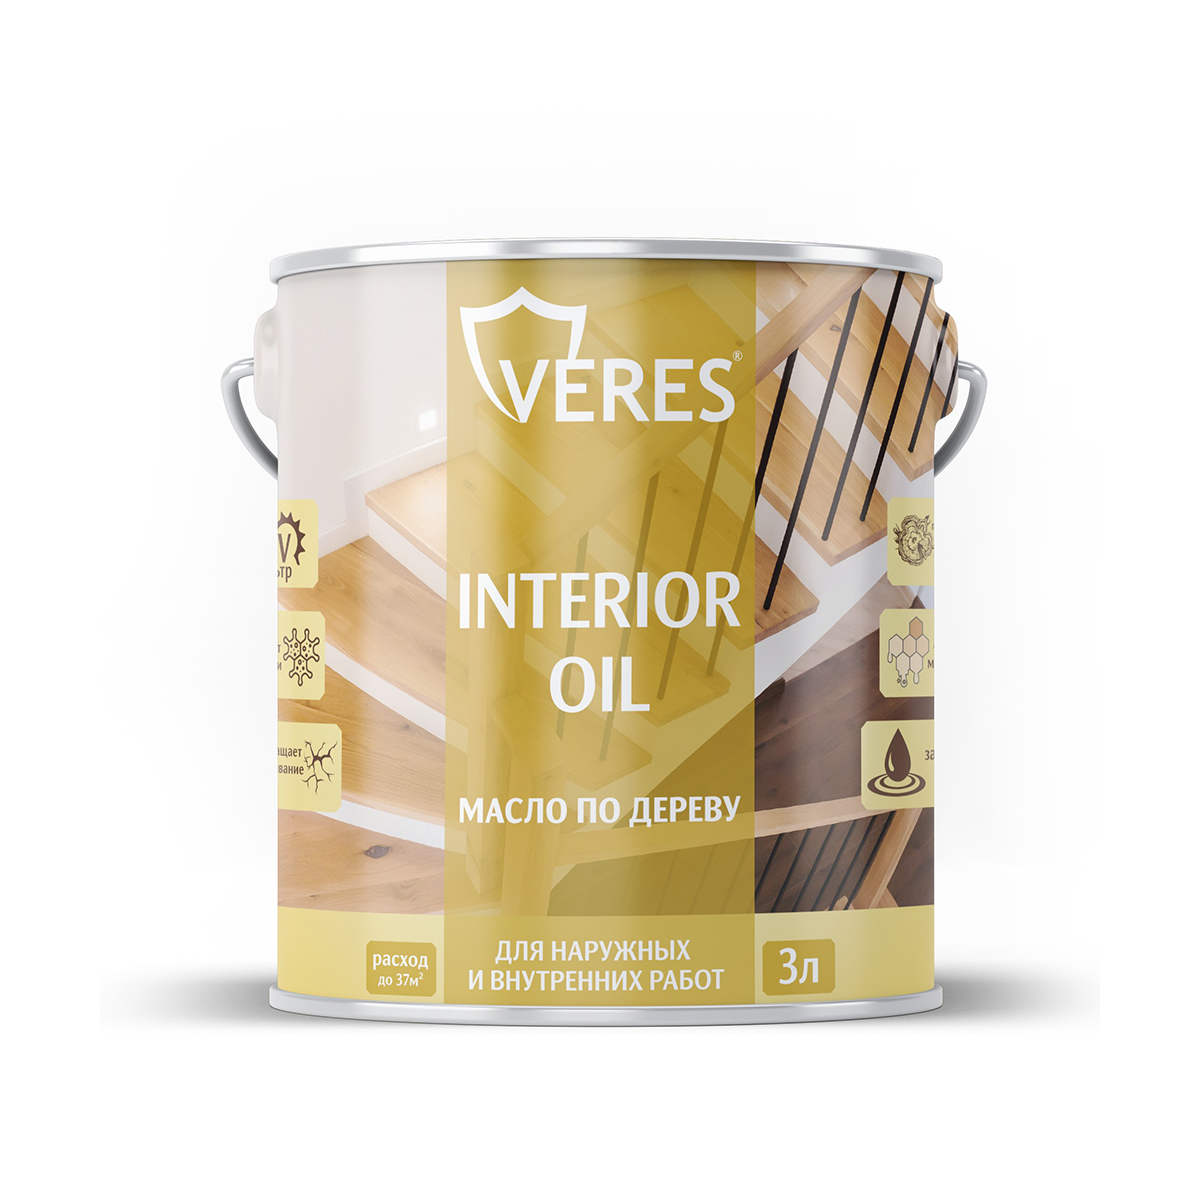 Масло для дерева Veres Interior Oil, 3 л, сосна масло лазурь для дерева защитное osmo holzschuts ol lasur 702 лиственница шелковисто матовое 2 5 л